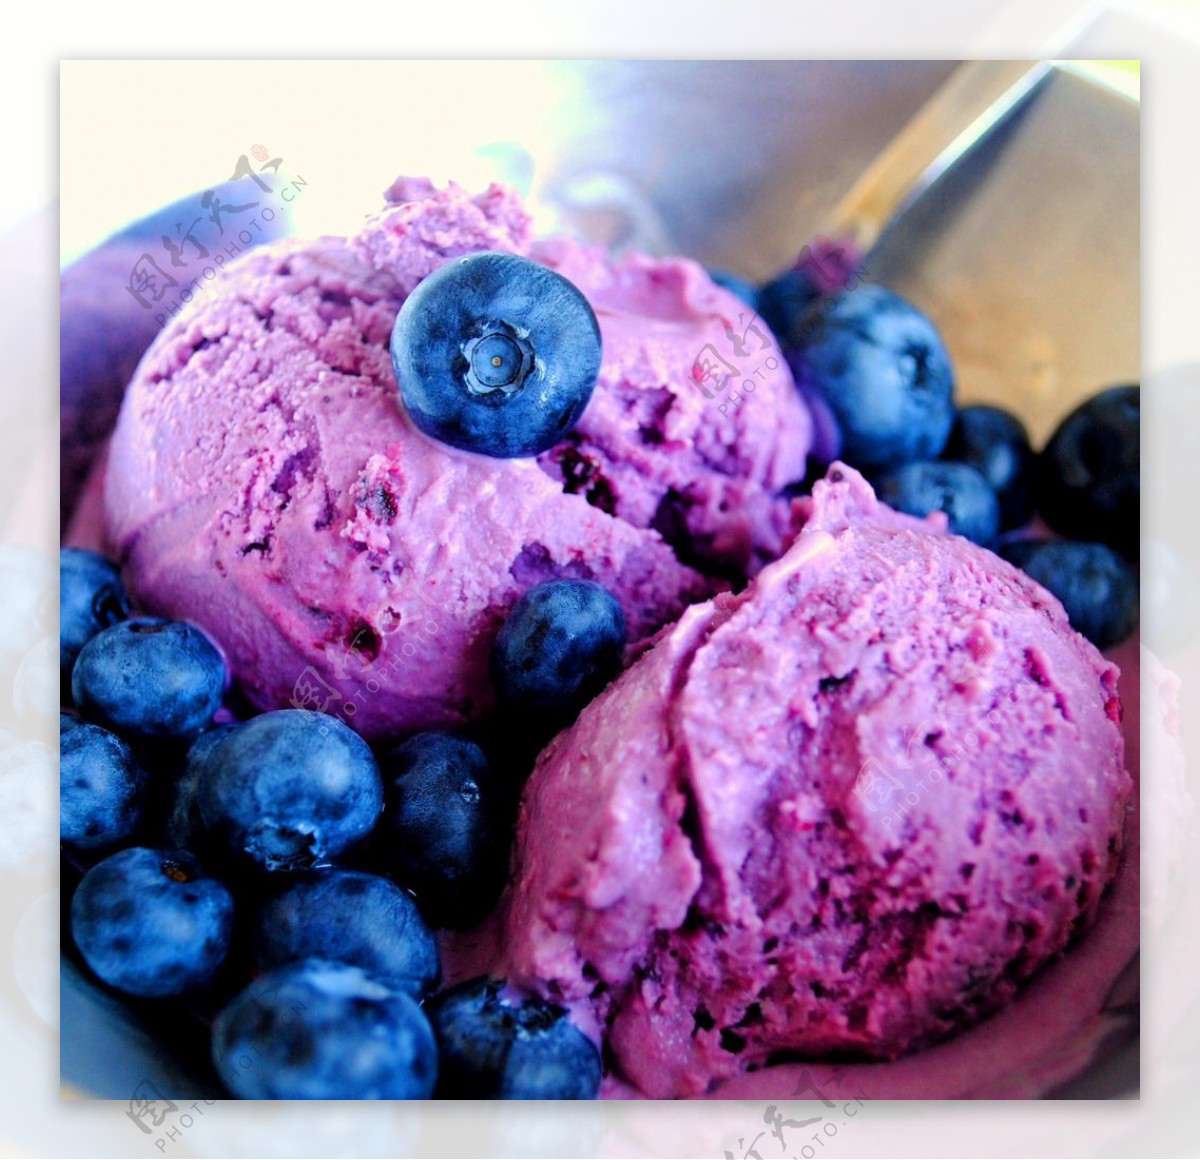 炎炎夏日里 那般招人爱——【蓝莓酸奶冰淇淋】_蓝莓酸奶冰淇淋_烧焦的Apple的日志_美食天下